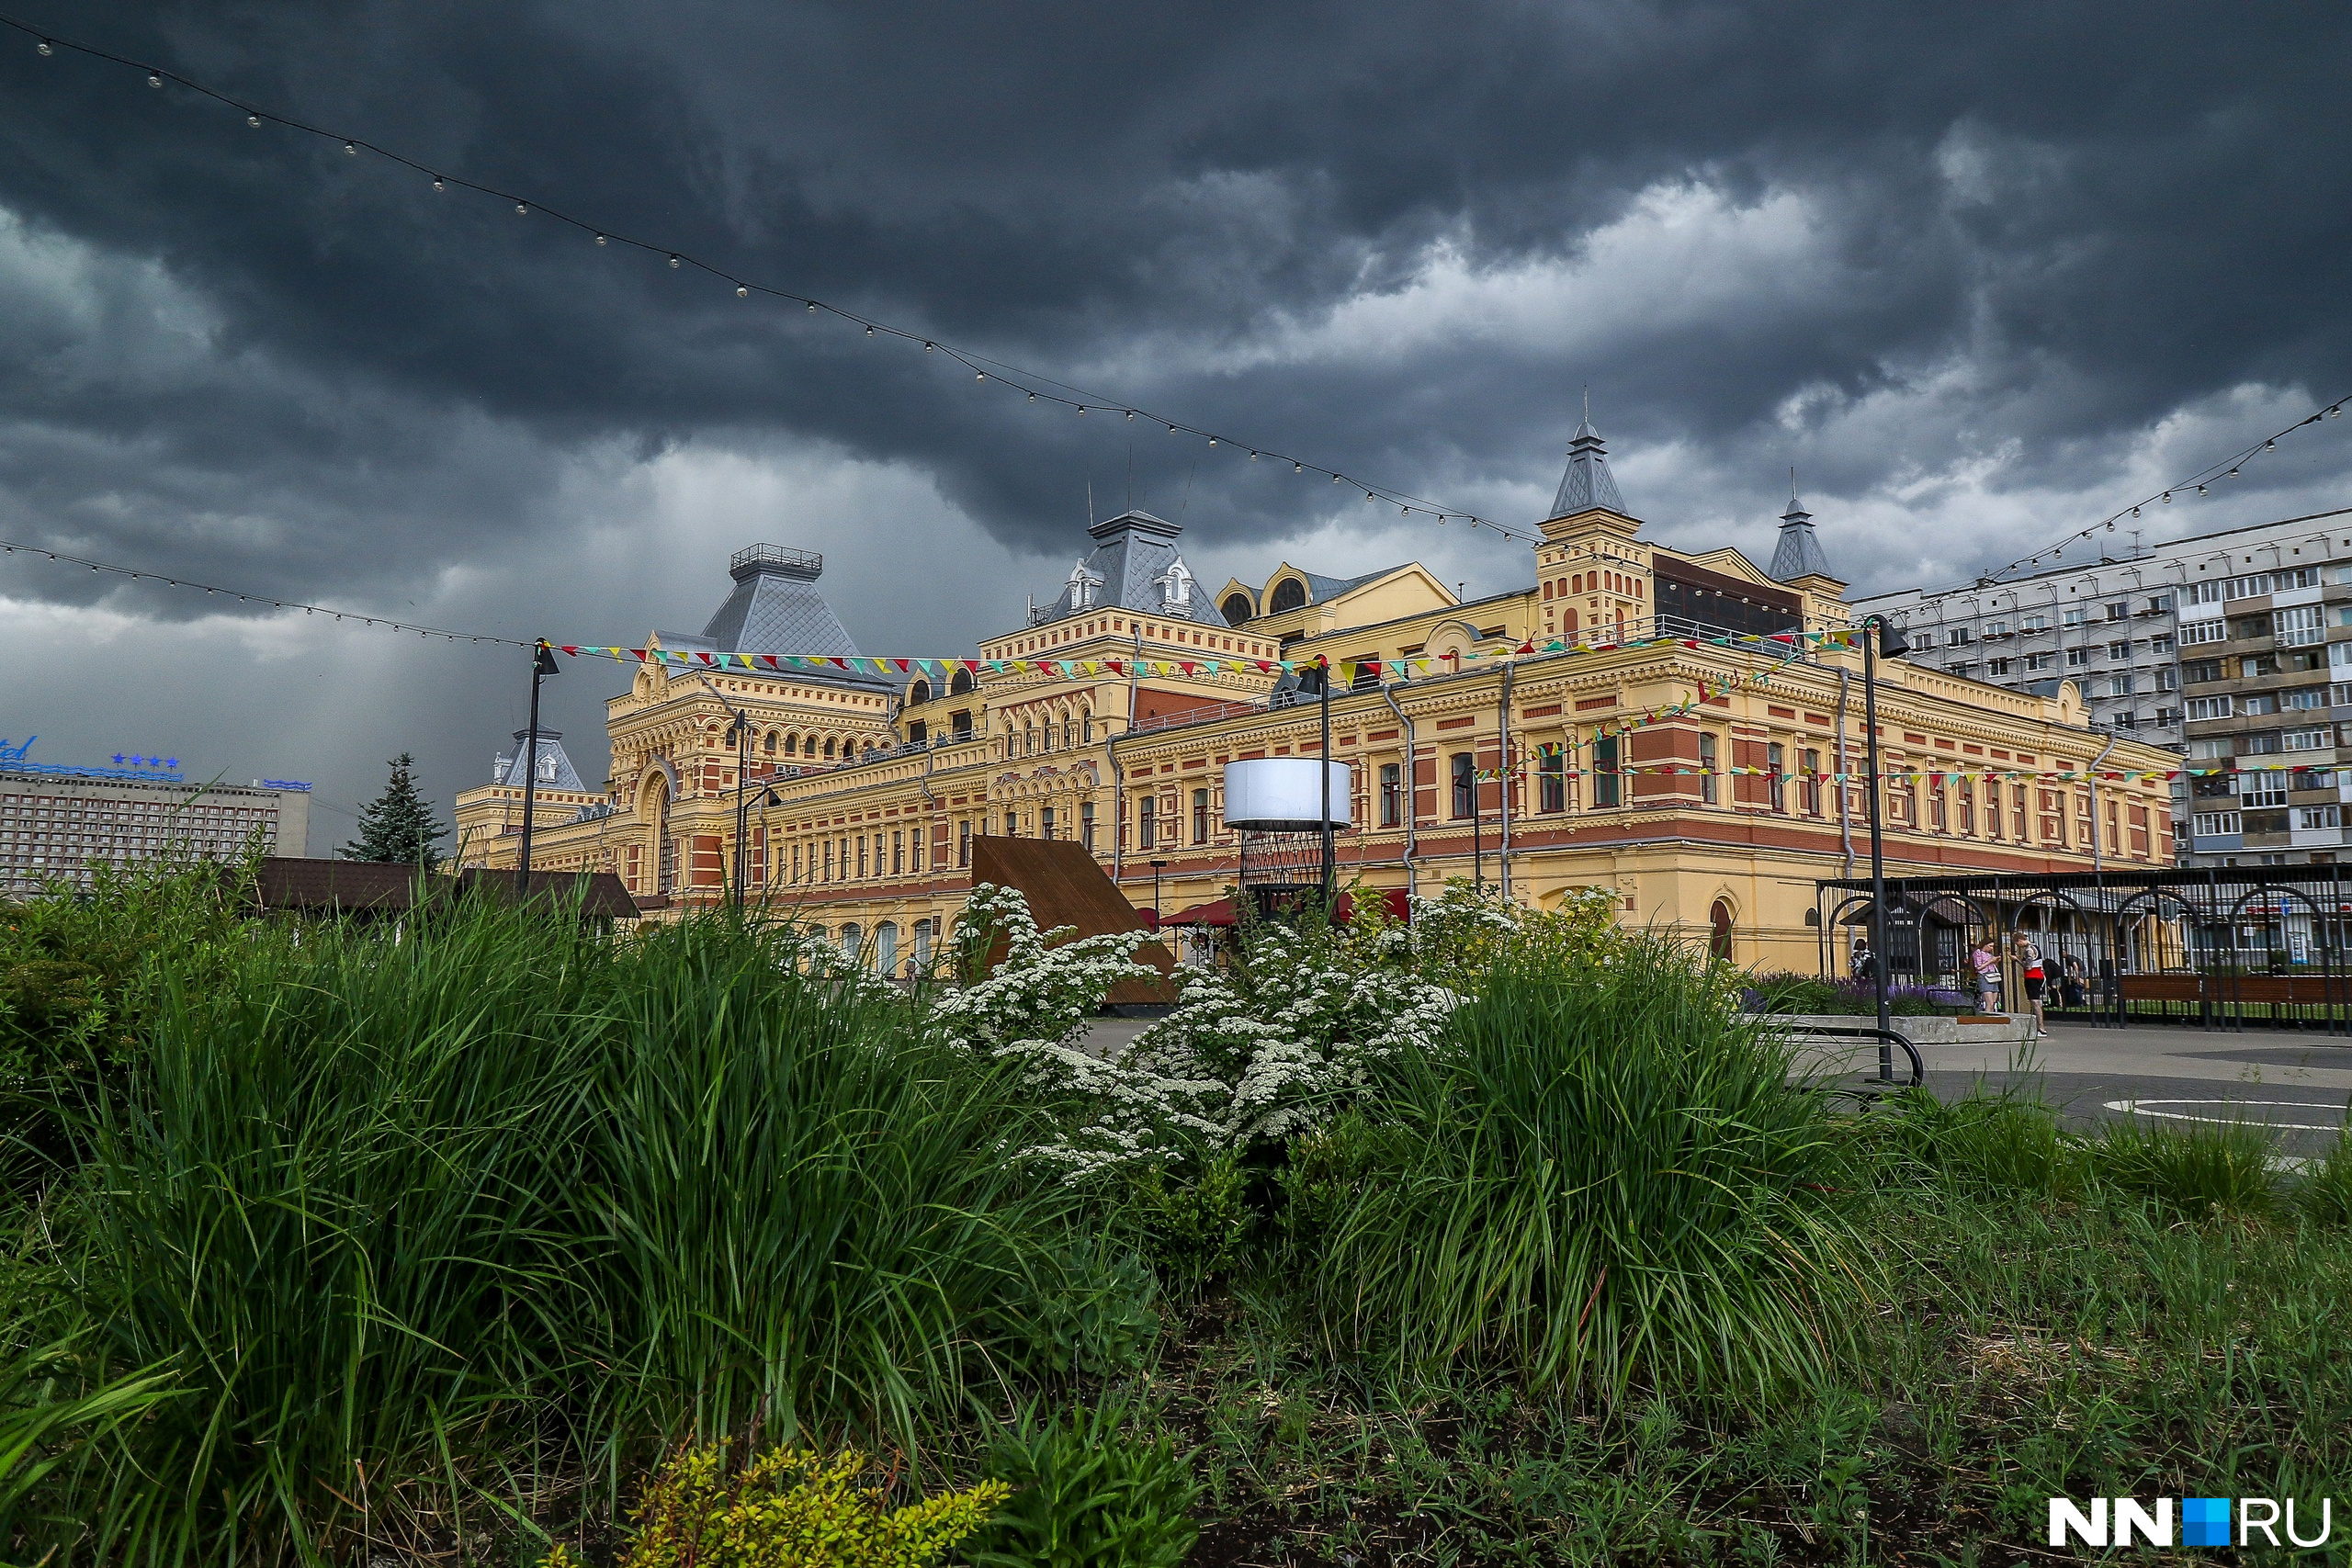 Мрачные тучи и раскаты грома. На Нижний Новгород обрушилась первая летняя гроза — атмосферные фото